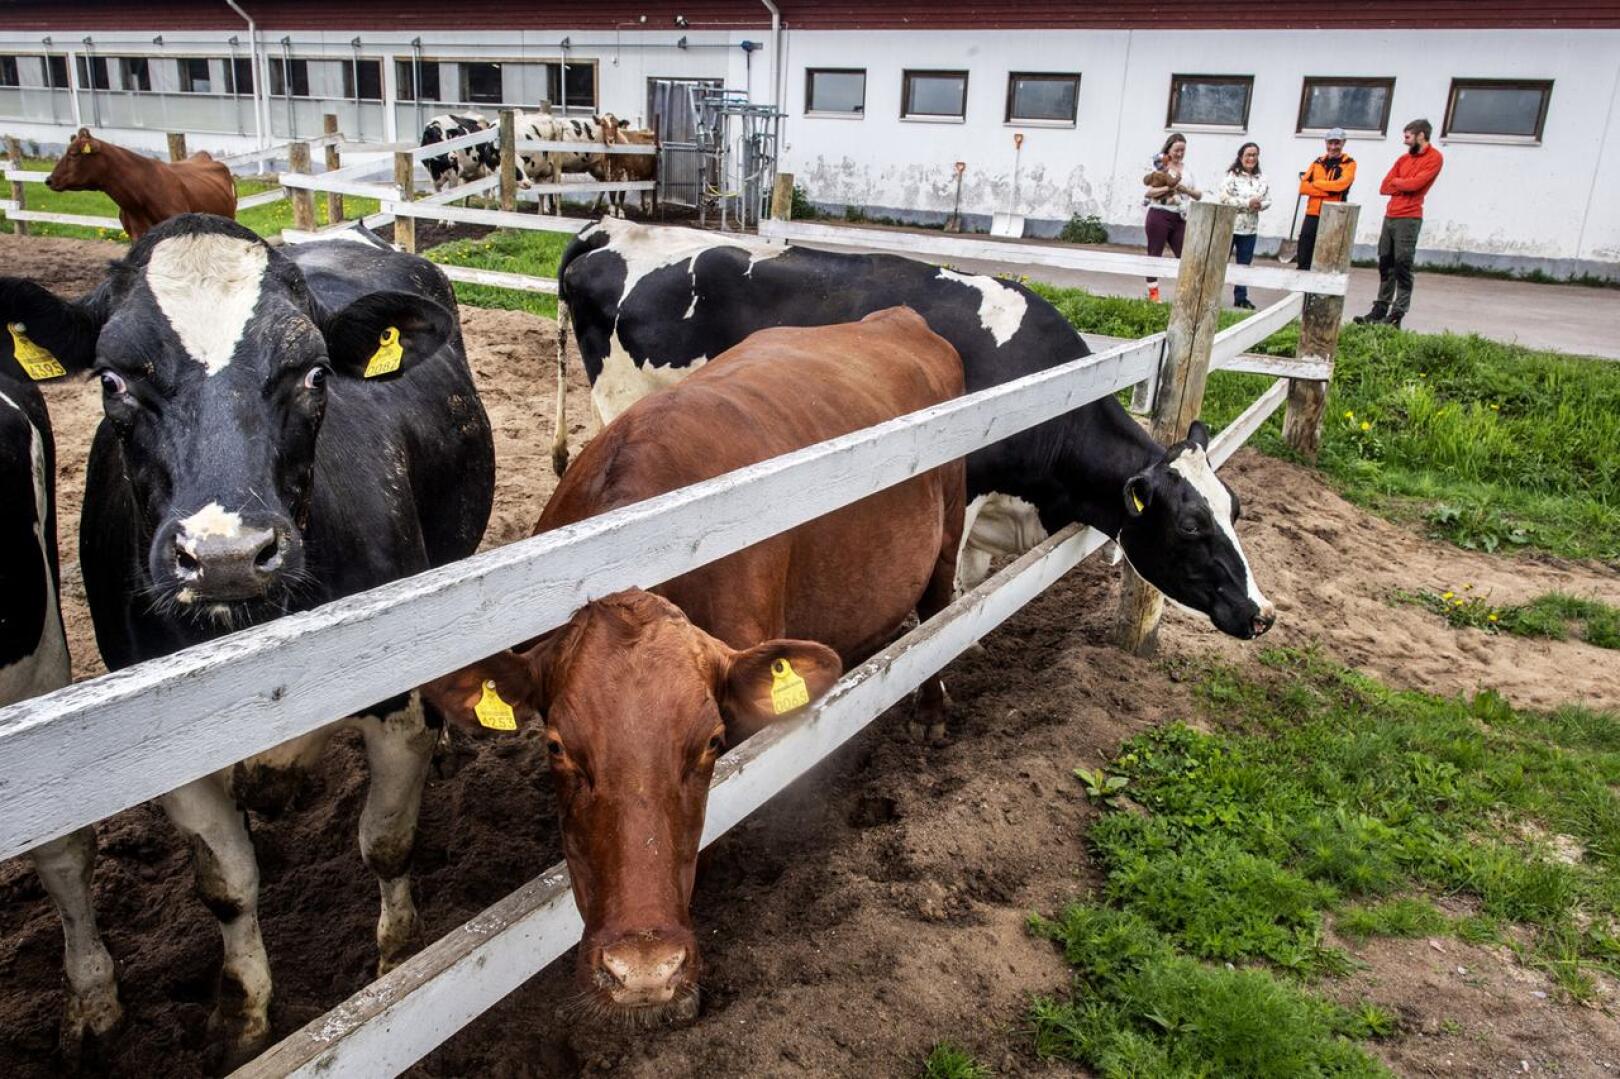 Madetojilla on pihattonavetassa noin 70 lypsävää lehmää. Lisäksi he kasvattavat sonneja teuraaksi.